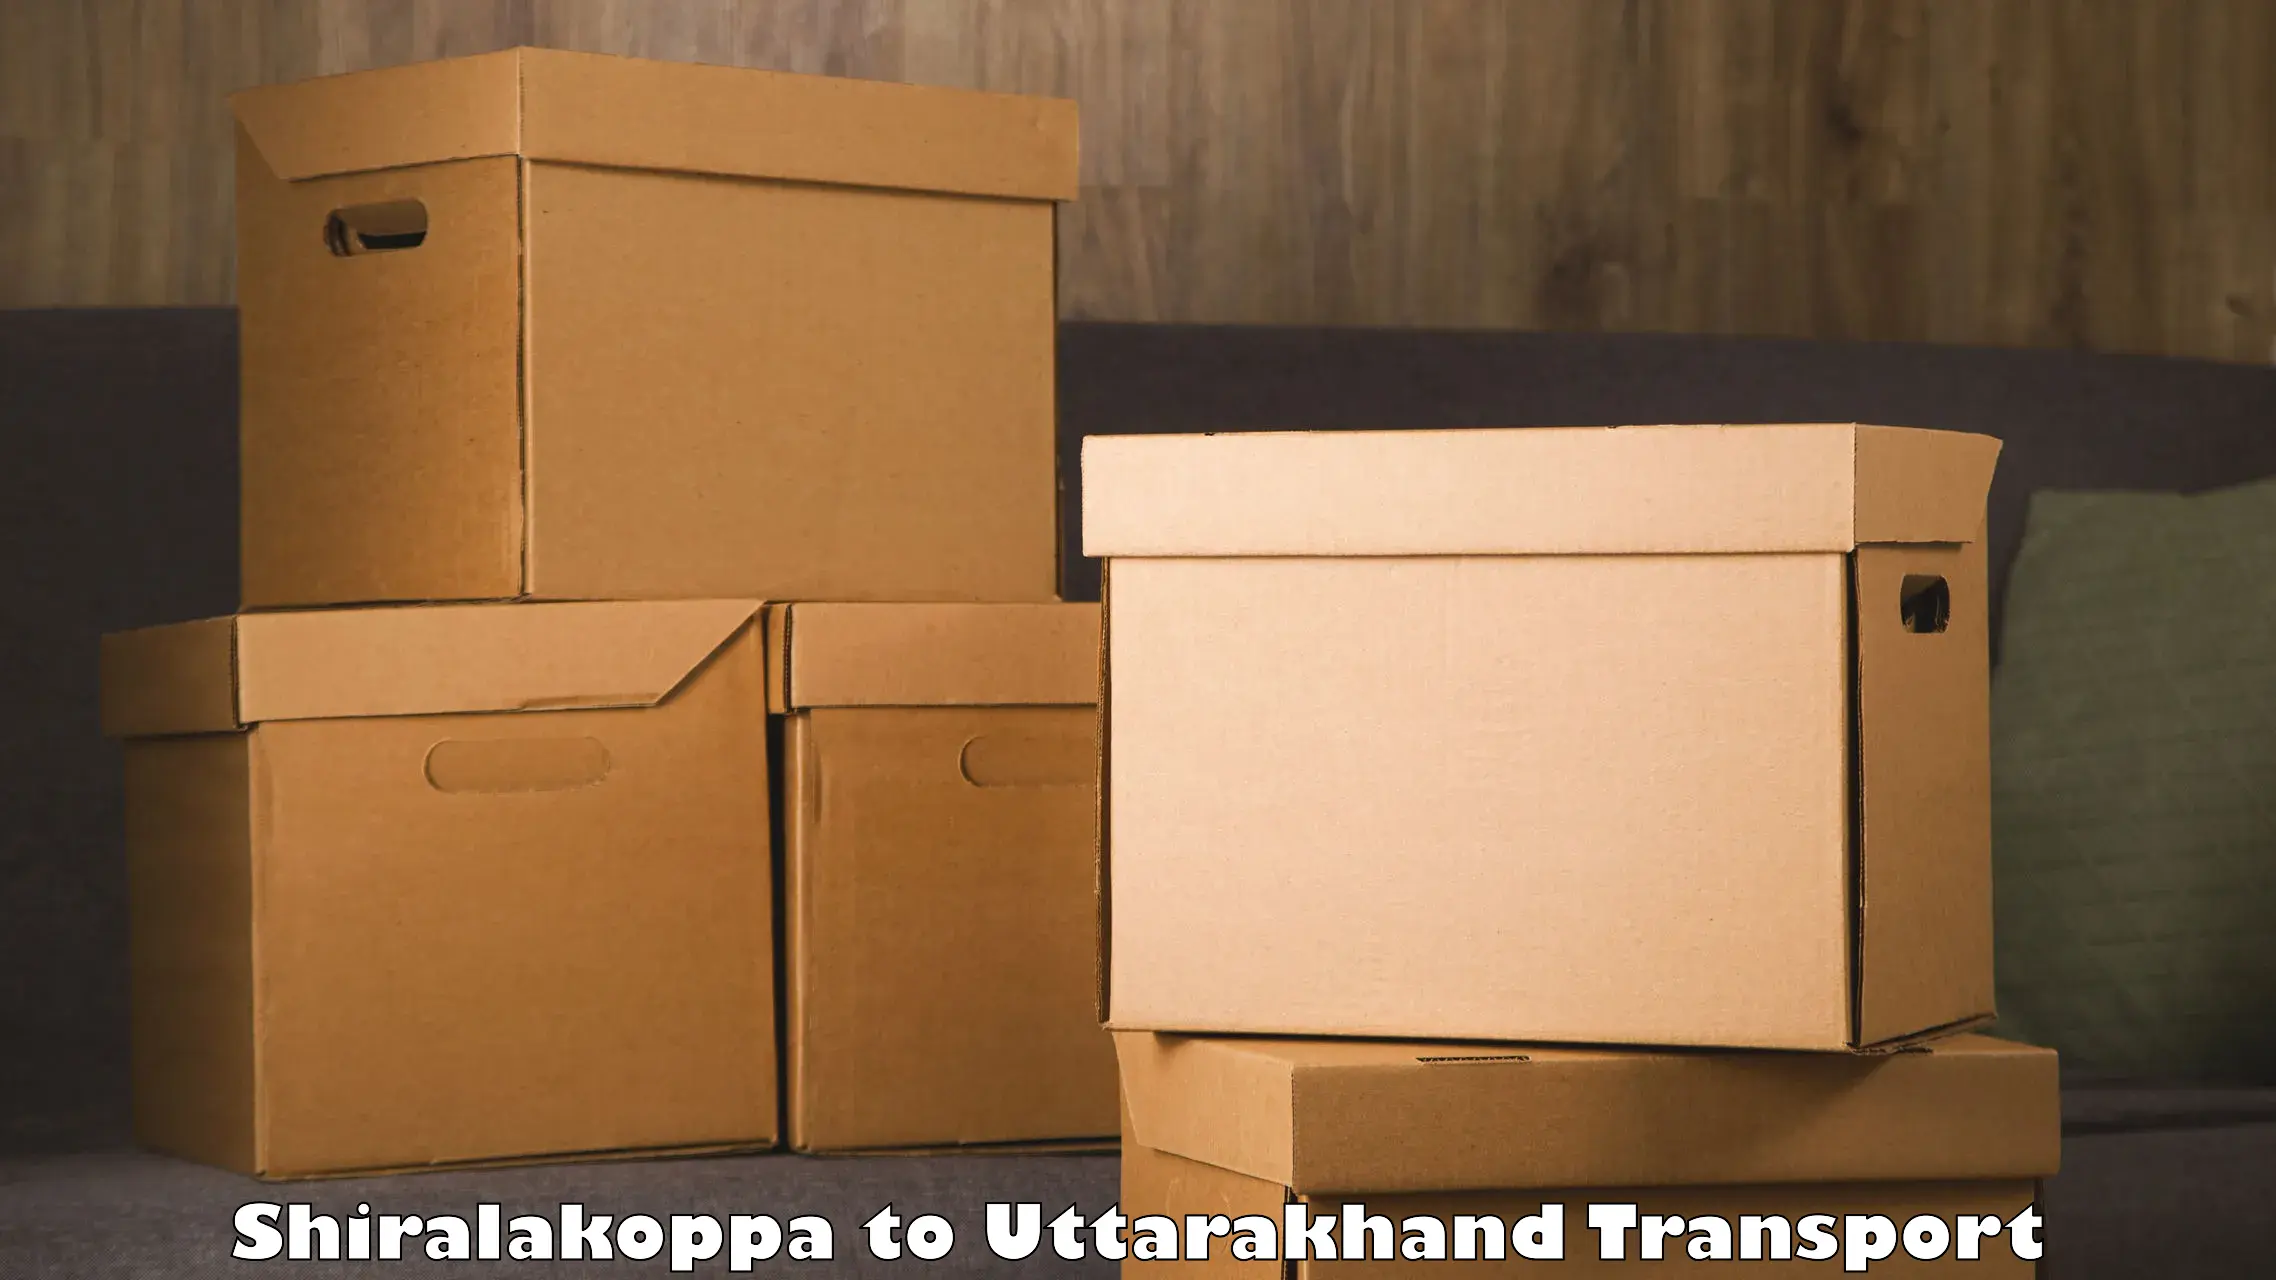 Furniture transport service Shiralakoppa to NIT Garhwal